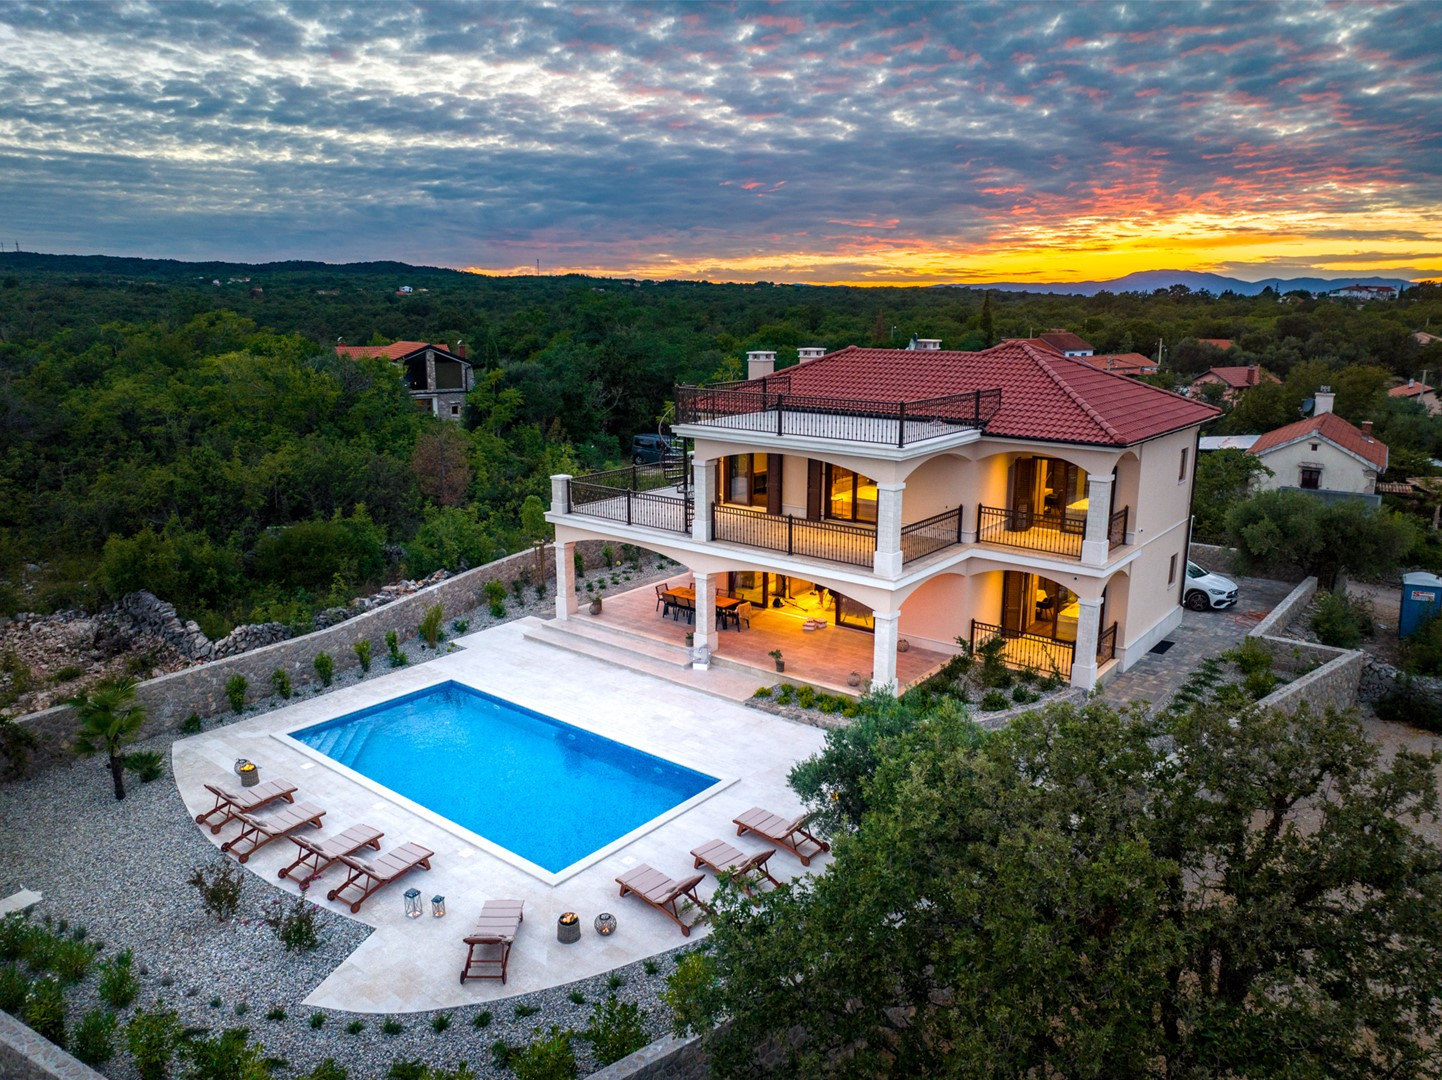 KRK LUXURY VILLAS - Luxury villa Glabrova with pool, sauna, private garden and parking in Gostinjca on Krk island